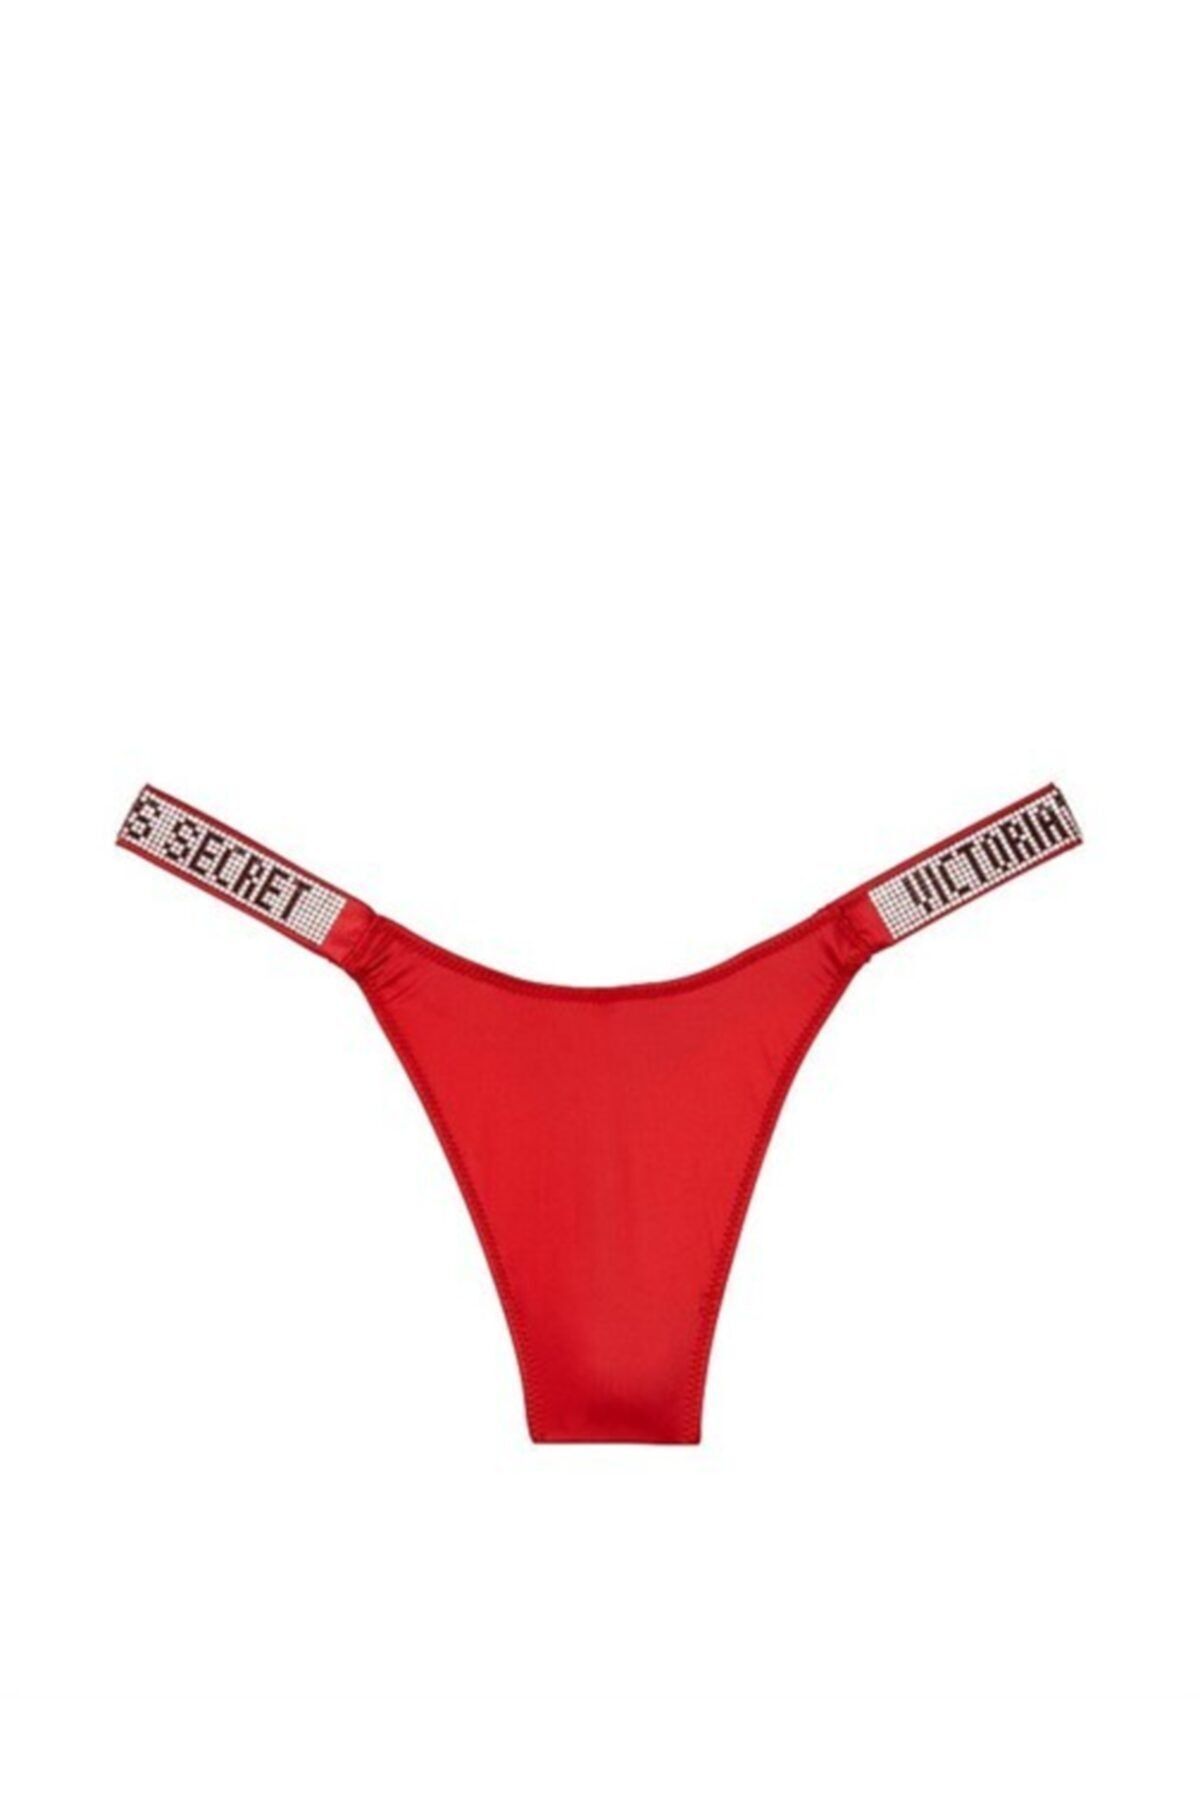 Estilo Kırmızı Bayan Elmas Işıltılı Taşlı Brazilian String Tanga Külot Bikini